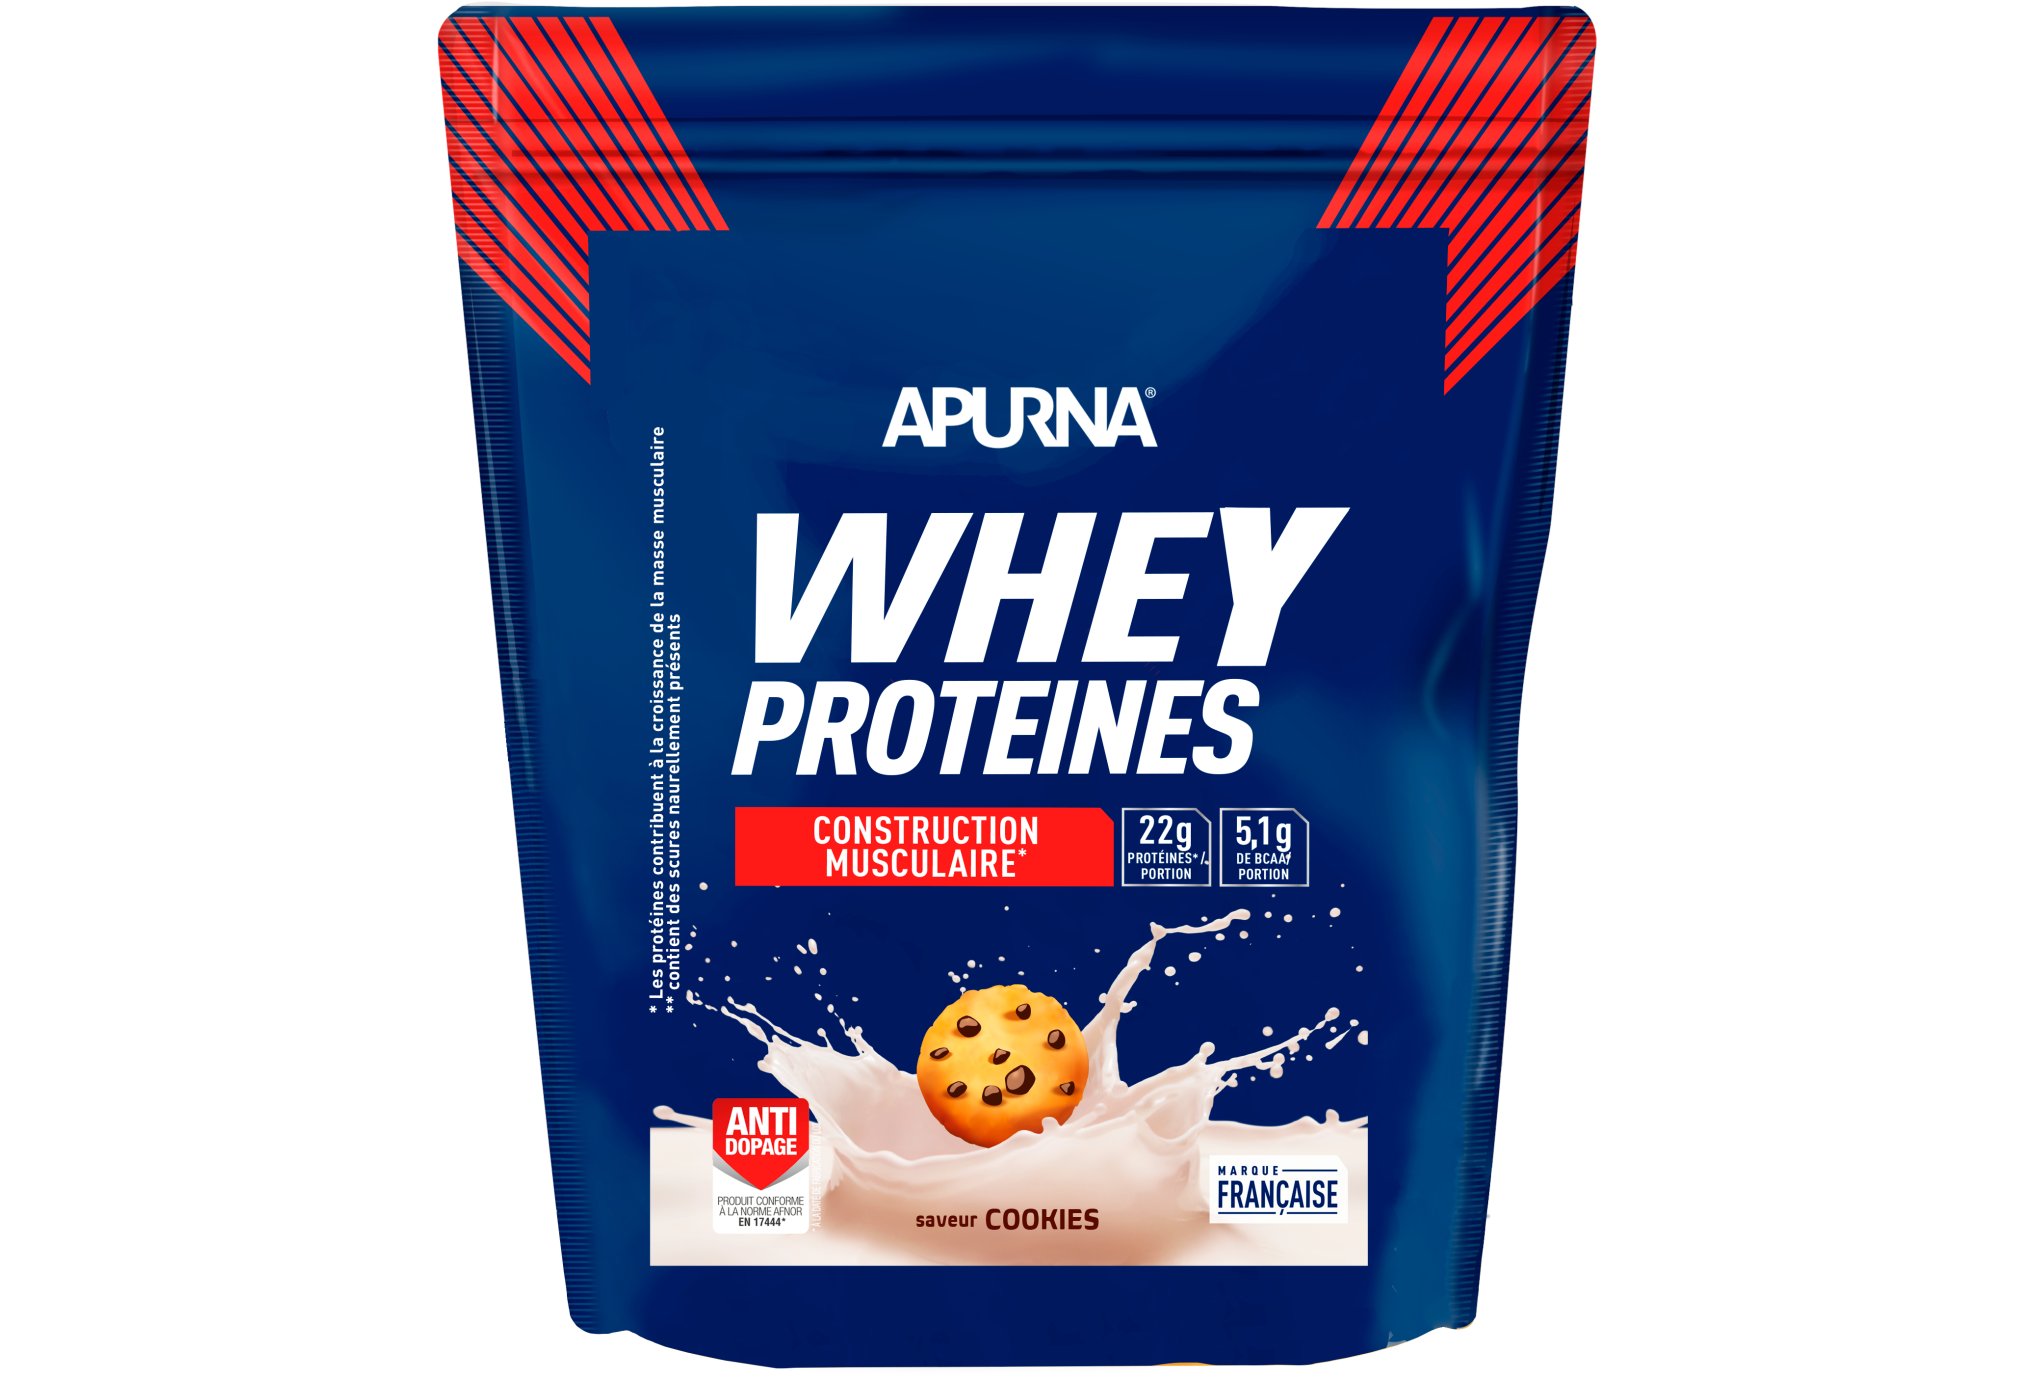 Apurna Whey protéines Cookies - 720 g Diététique Protéines / récupération